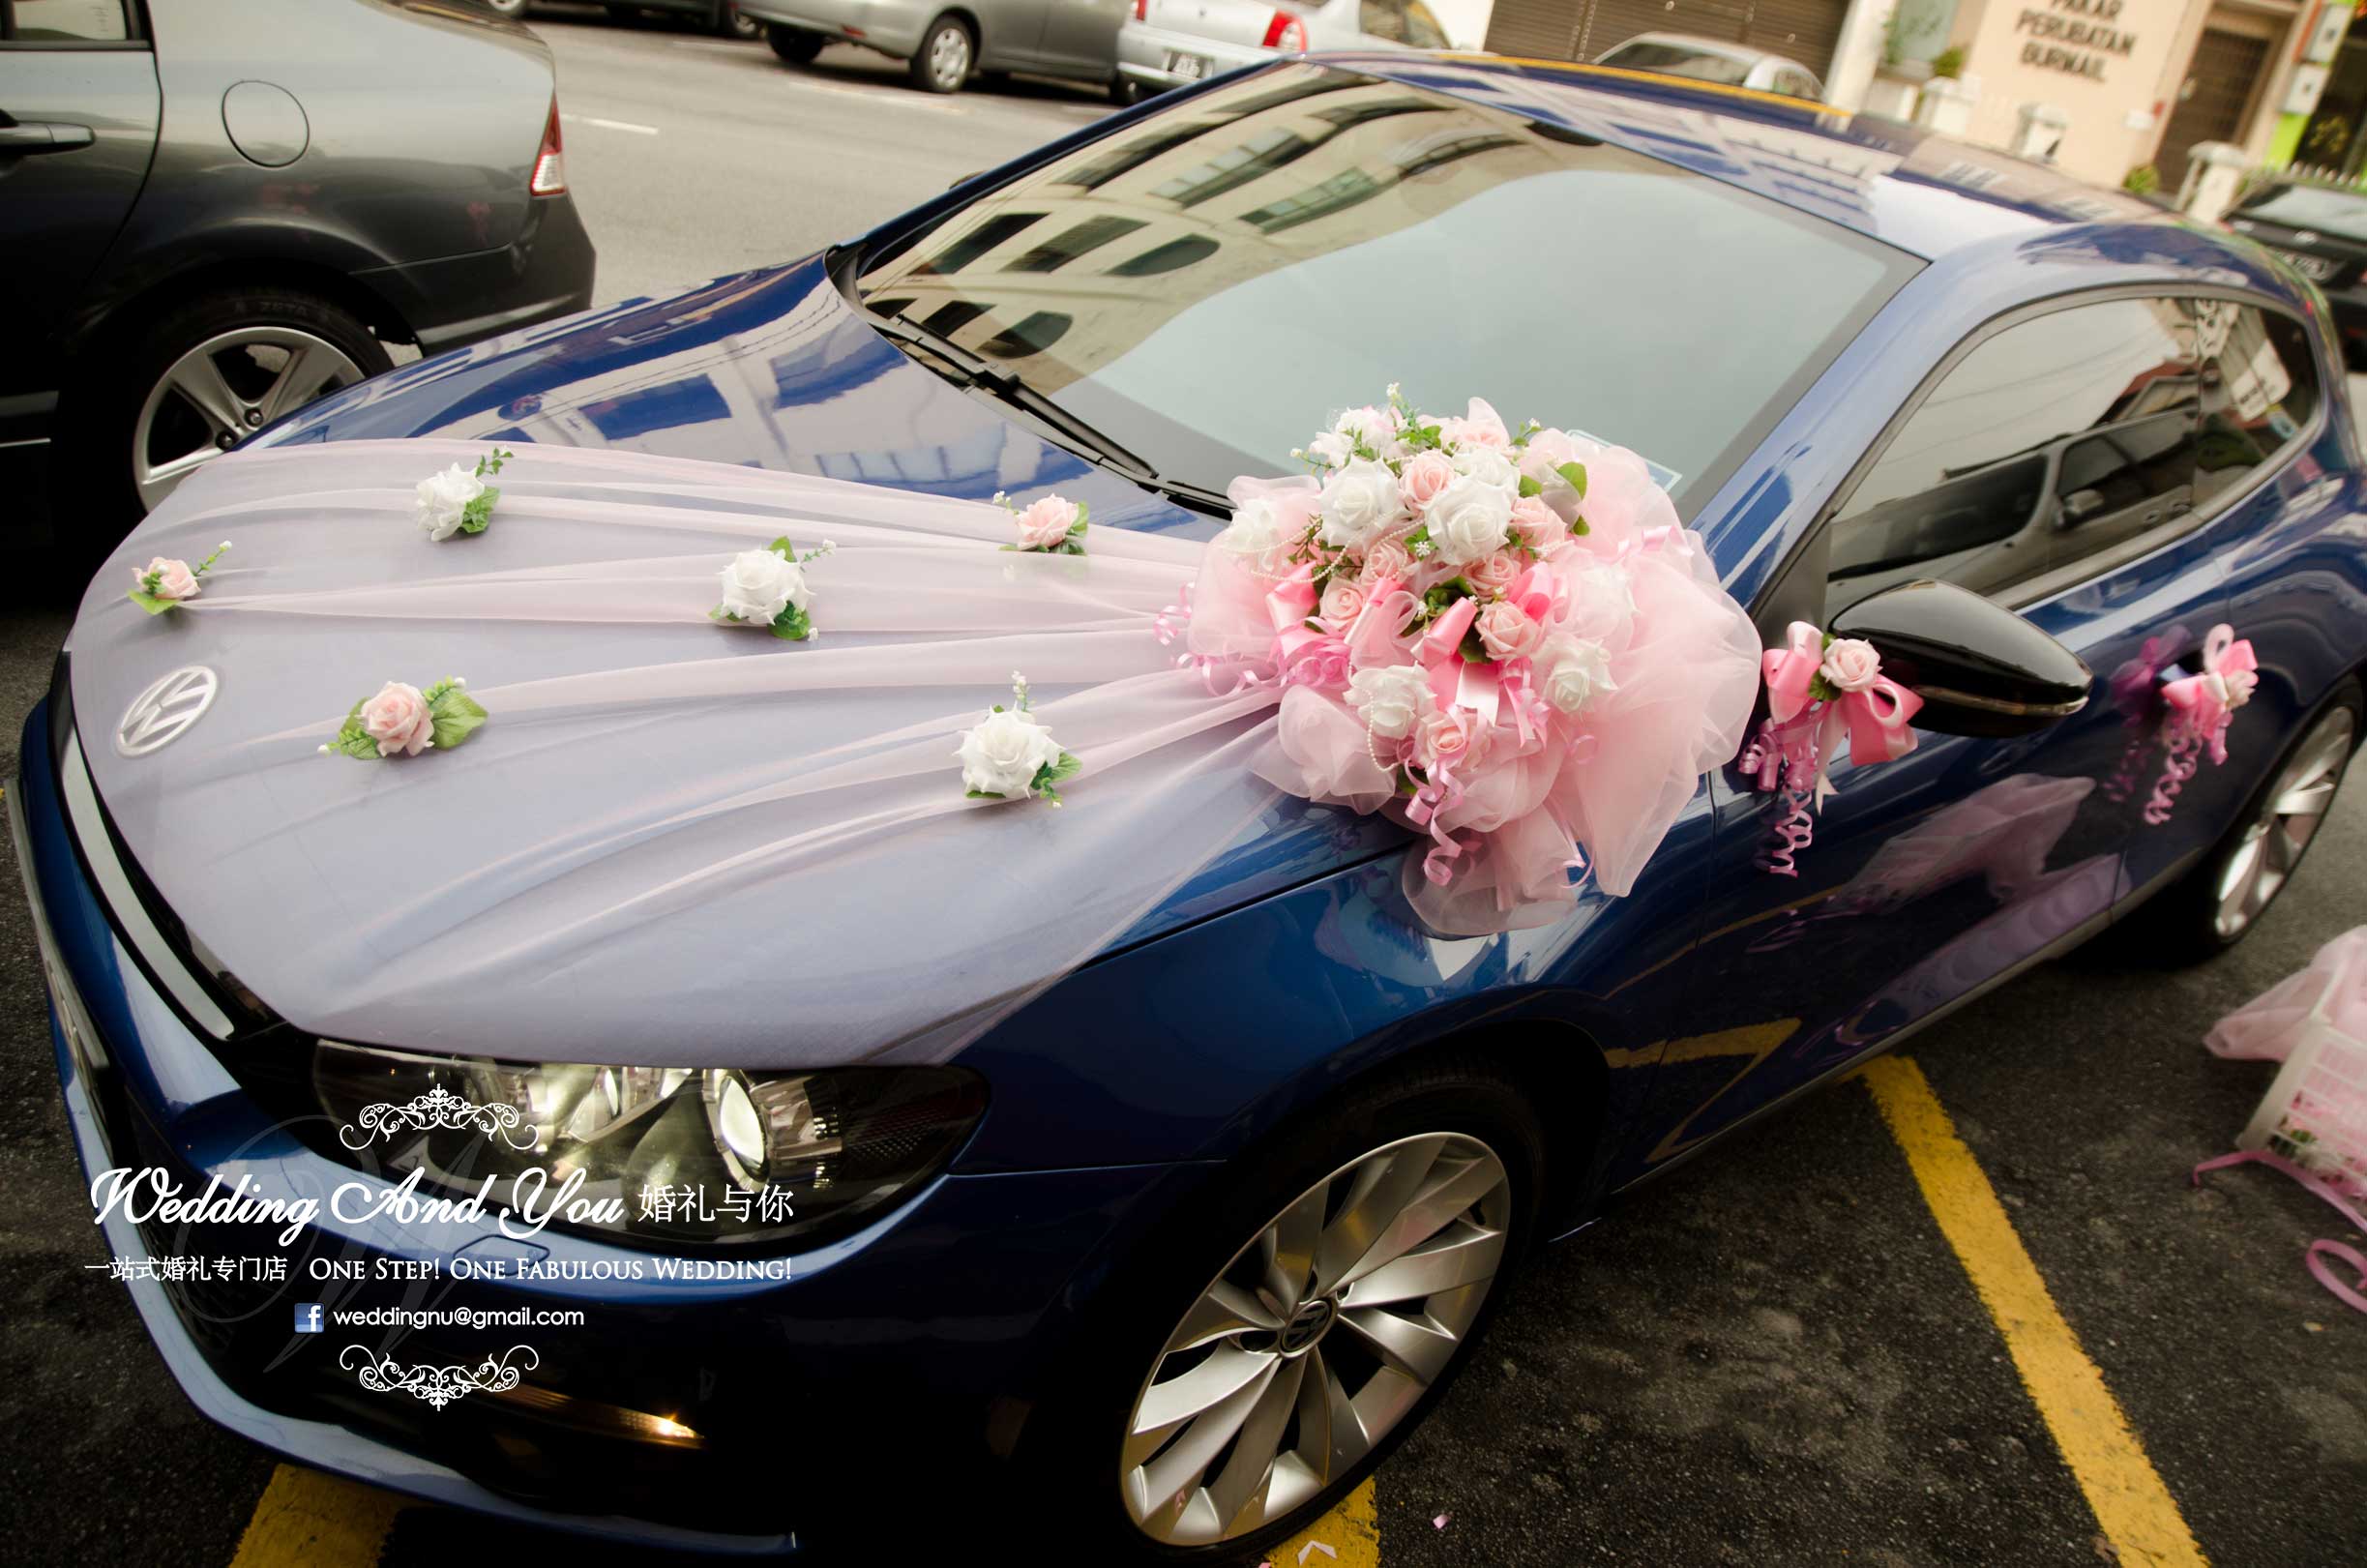 Wedding Car Decoration. Car